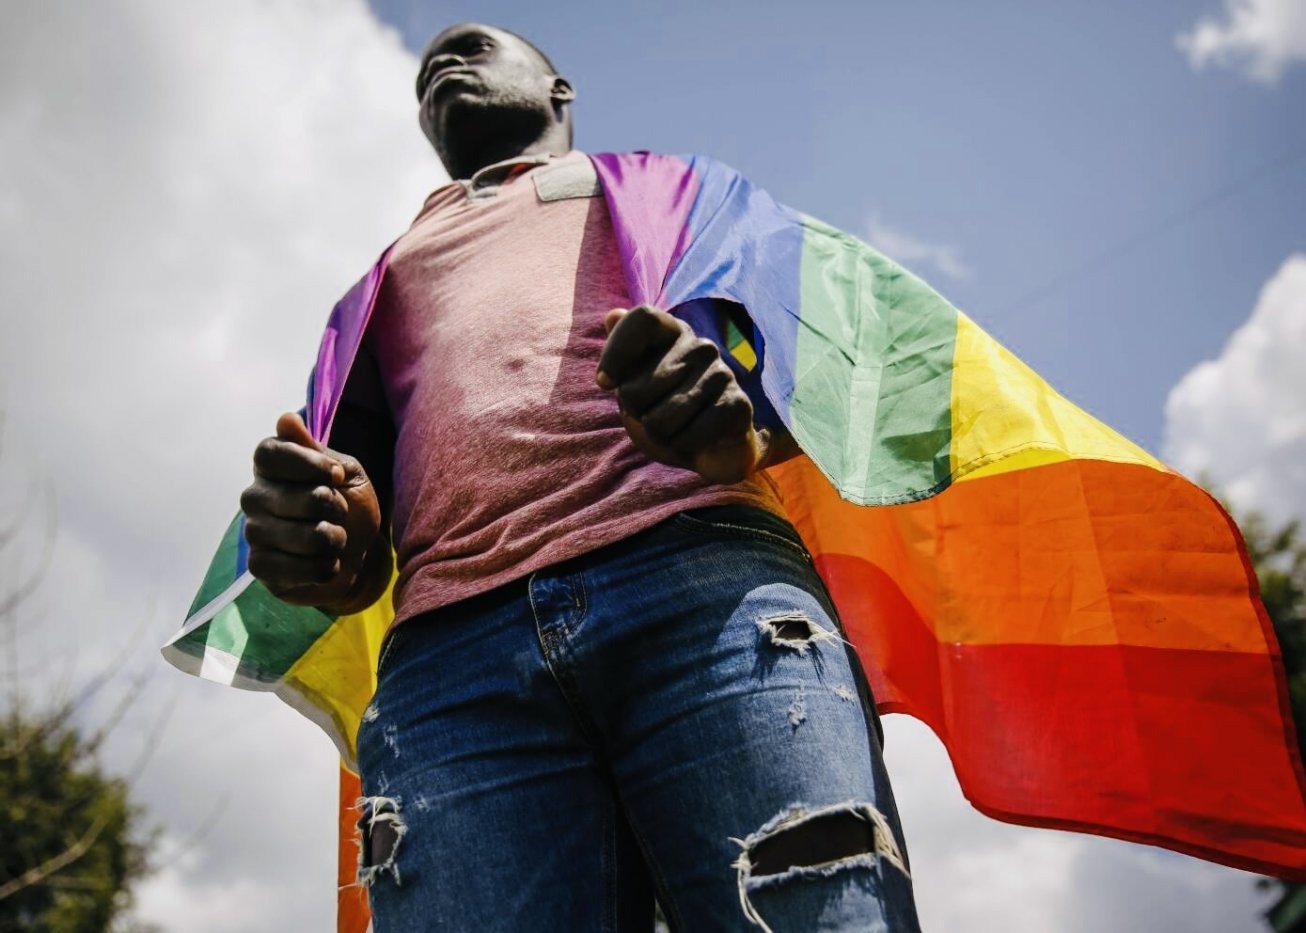 Les pays occidentaux veulent contraindre l'Ouganda à accepter l’homosexualité (autorités)